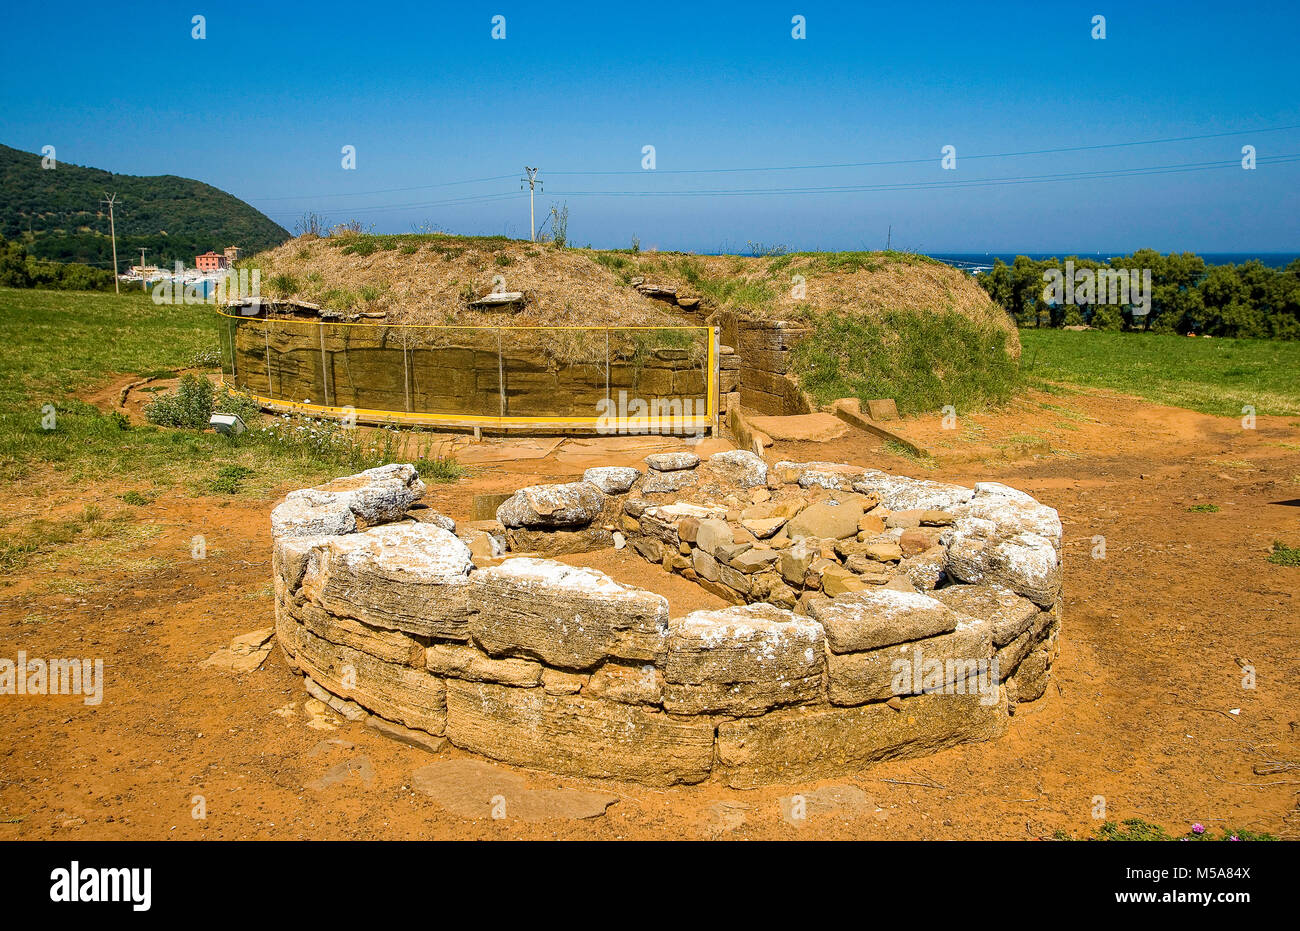 Italien, Toskana, Baratti Archeologica etruskischen Park, Archäologie, balsamarium Grab mit einem Krieger Kopf | Stockfoto